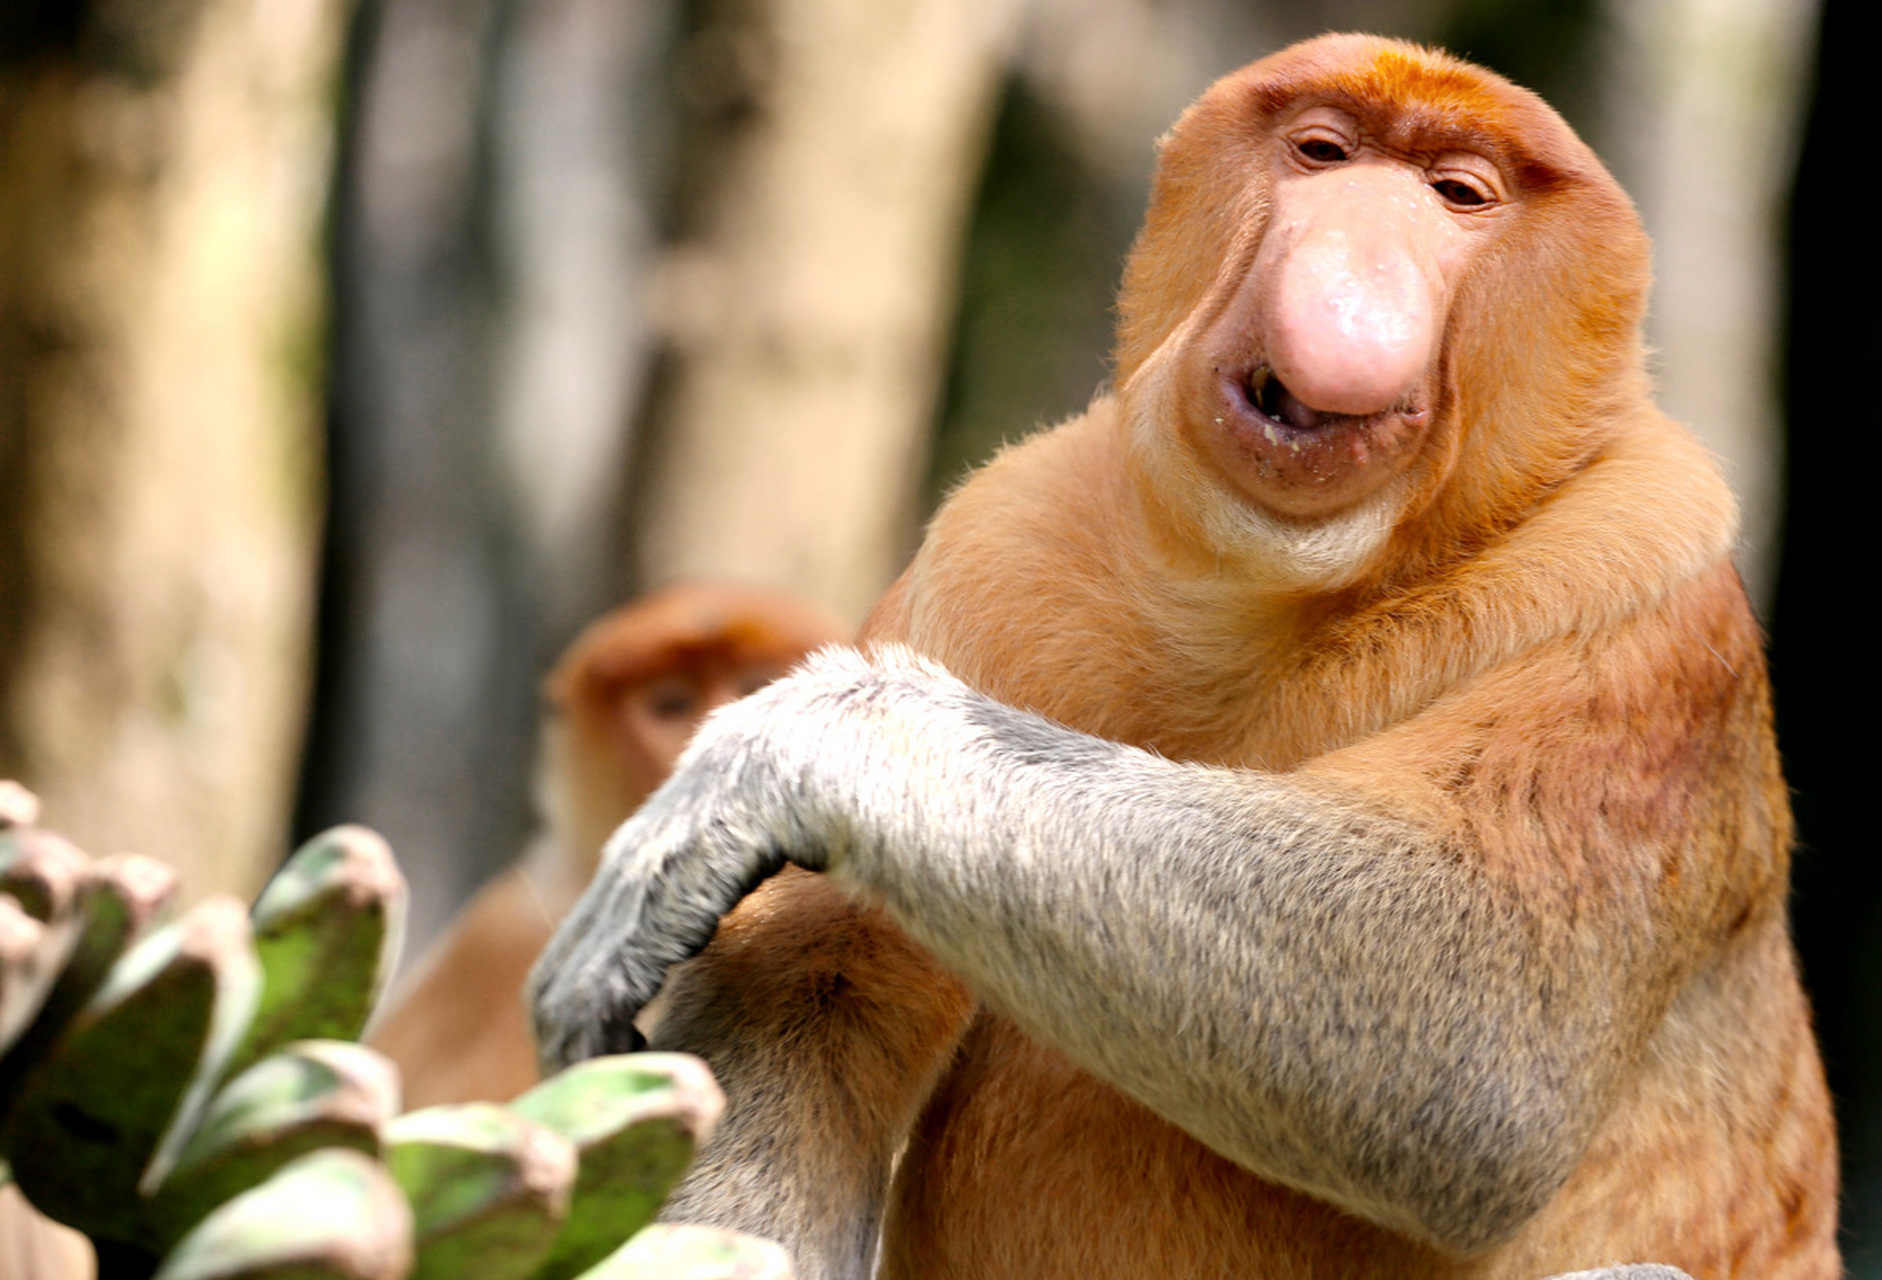 长鼻猴,这种生活在东南亚热带雨林的珍稀灵长类动物,以其独特的长鼻子